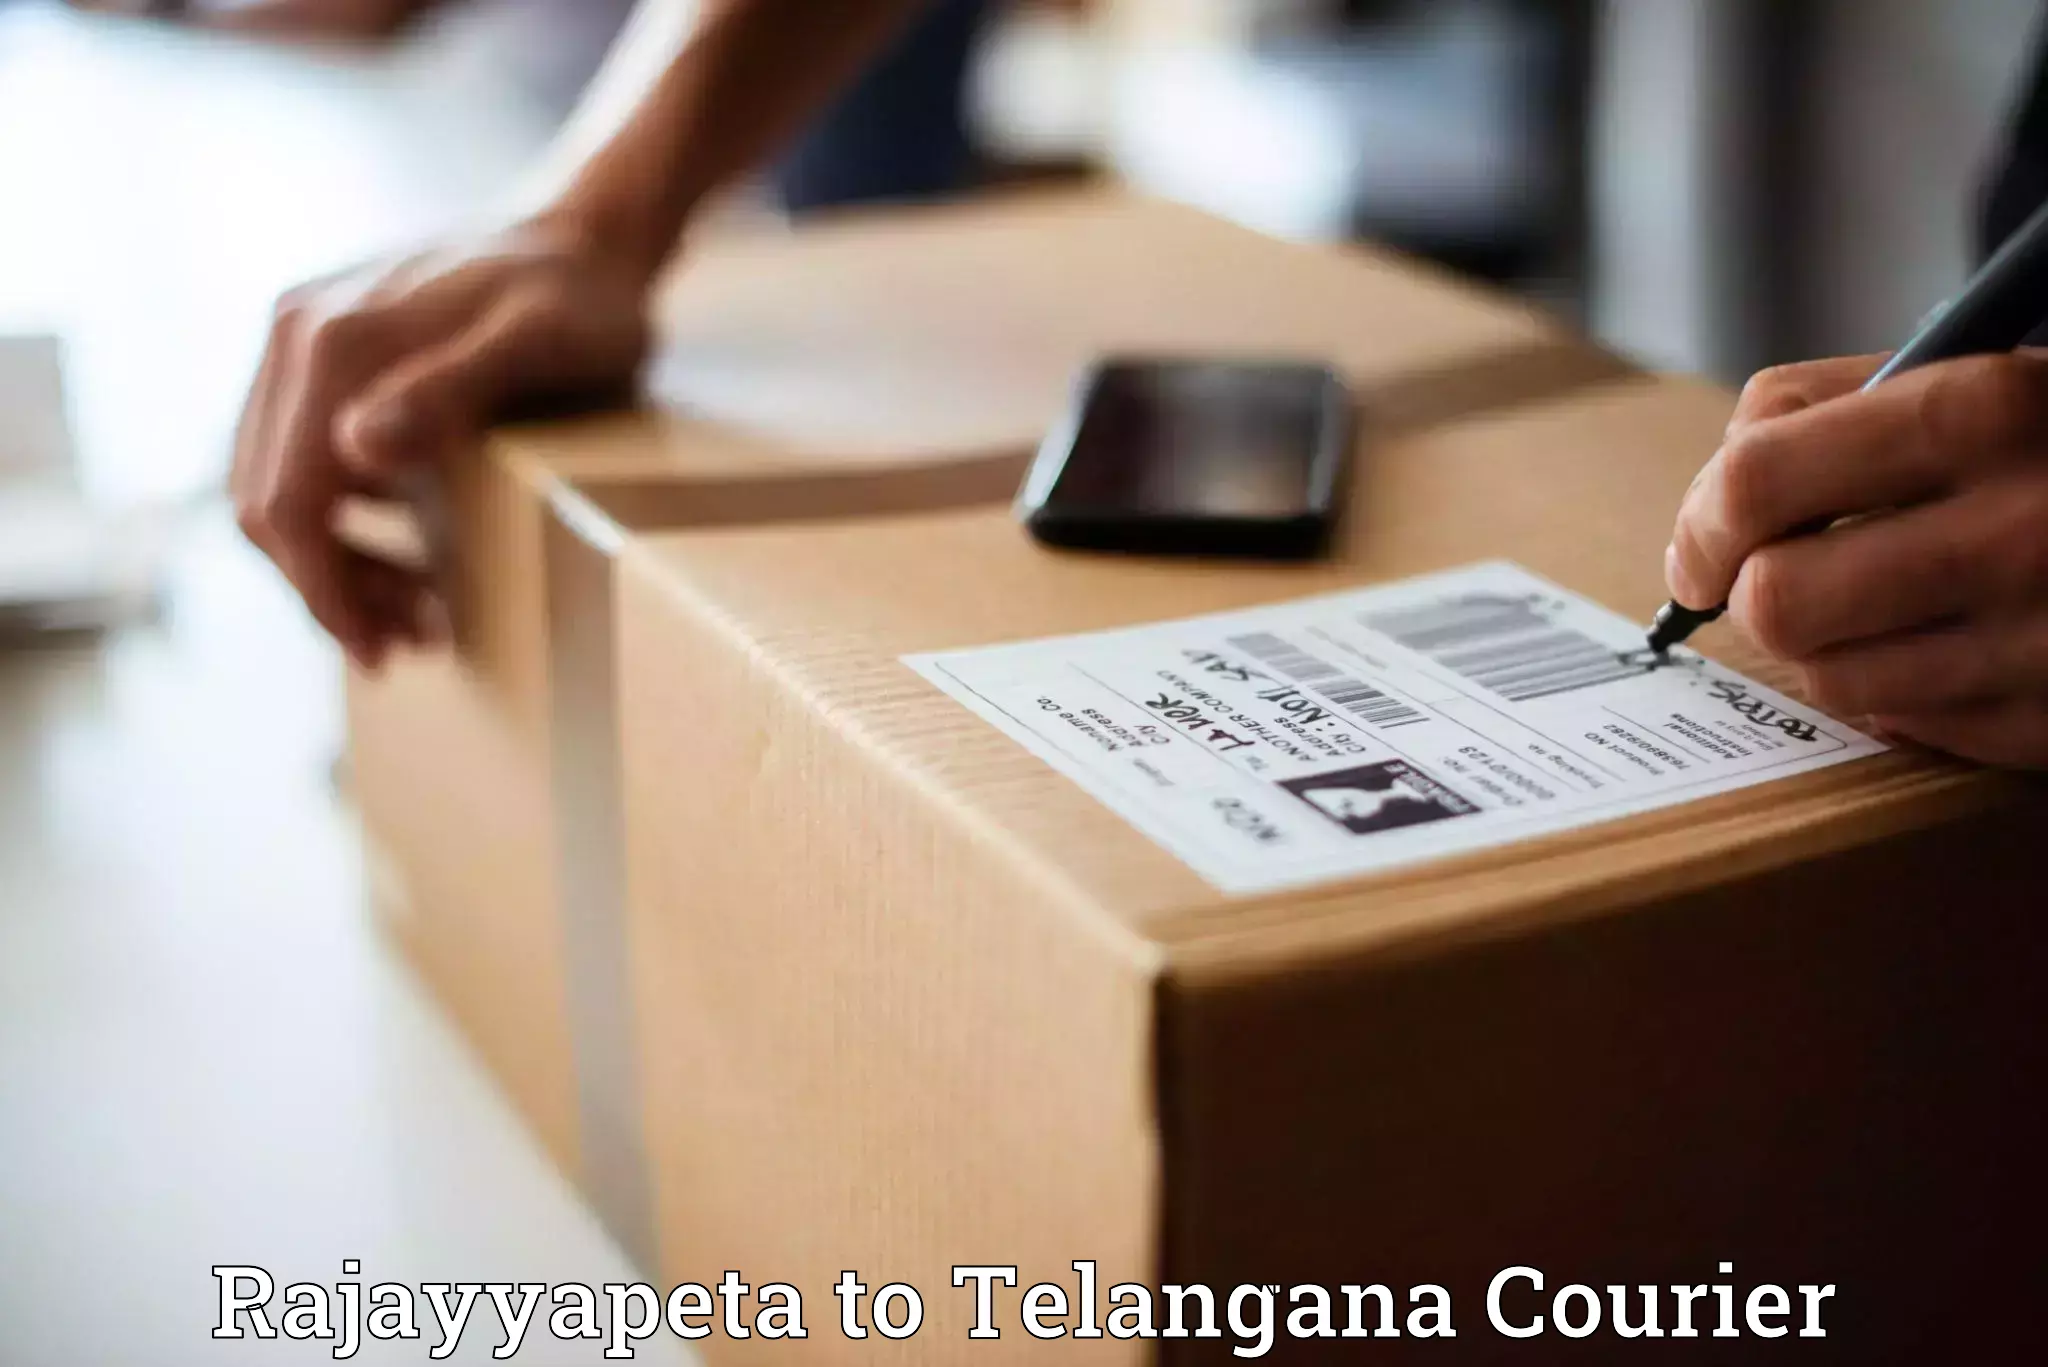 Express delivery capabilities Rajayyapeta to Telangana